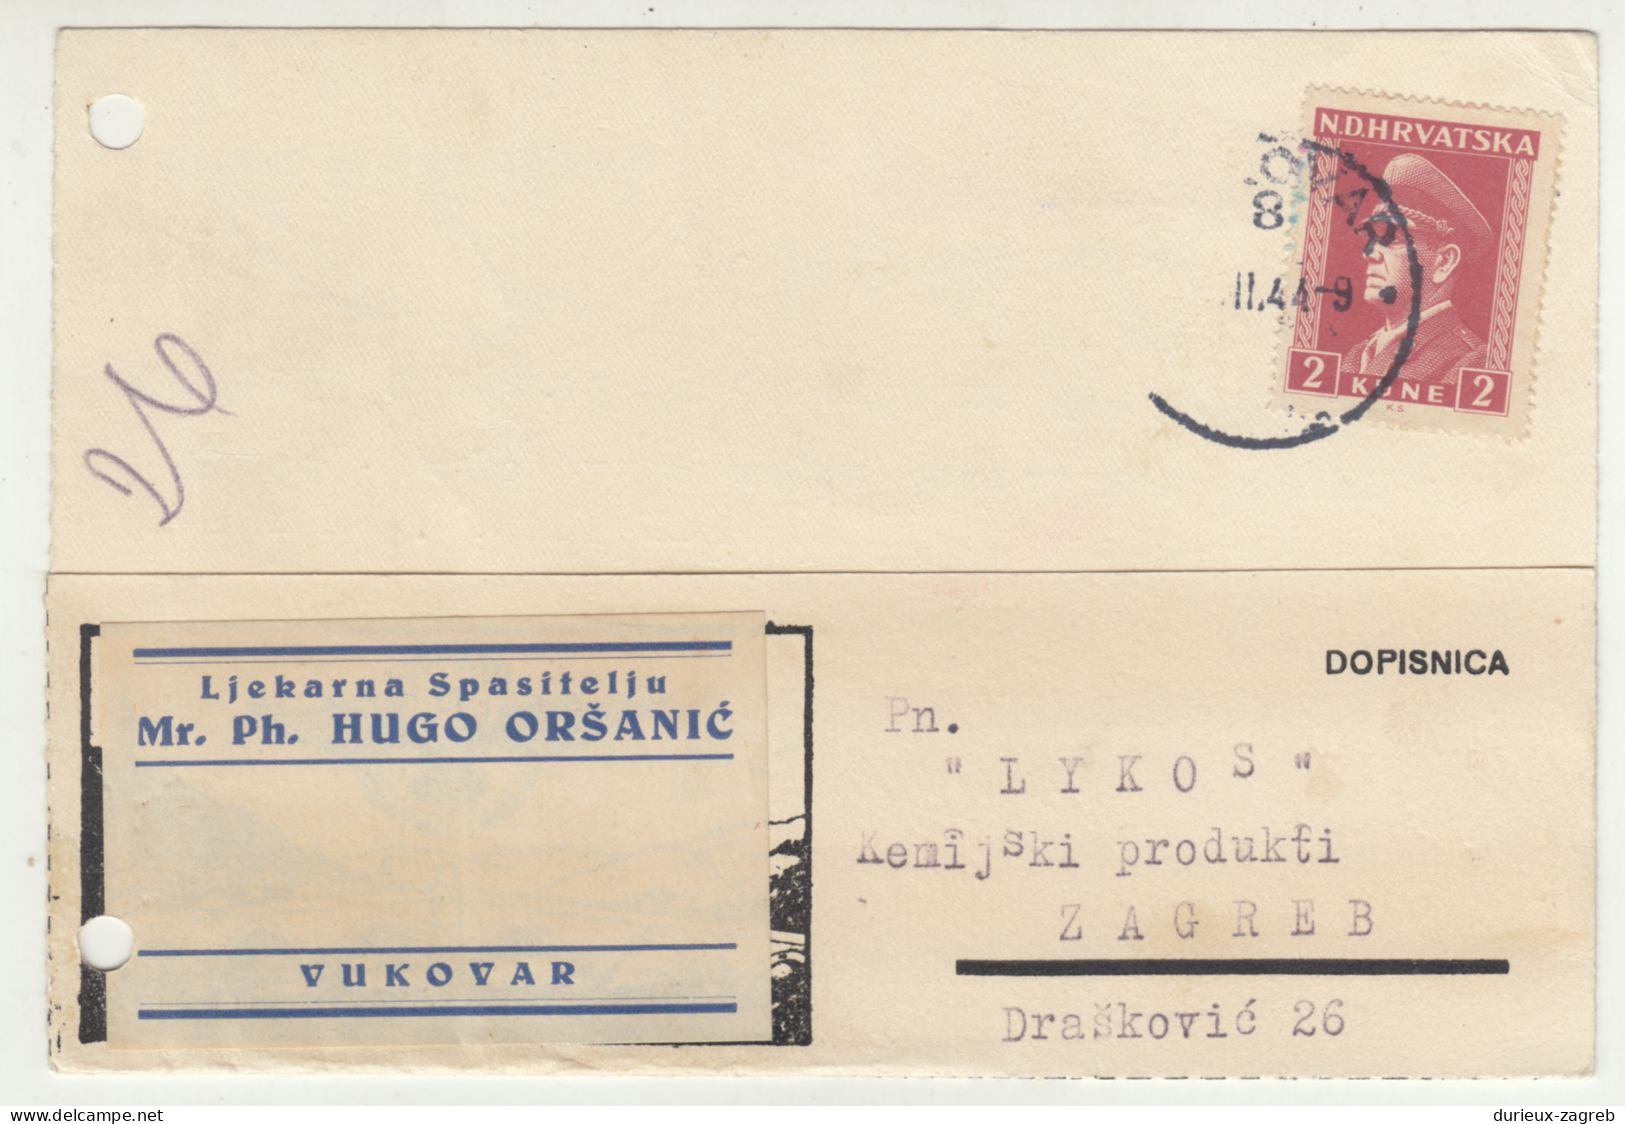 Ljekarna Spasitelju, Hugo Oršanić, Vukovar Company Postal Card Posted 1944 B240503 - Croatie